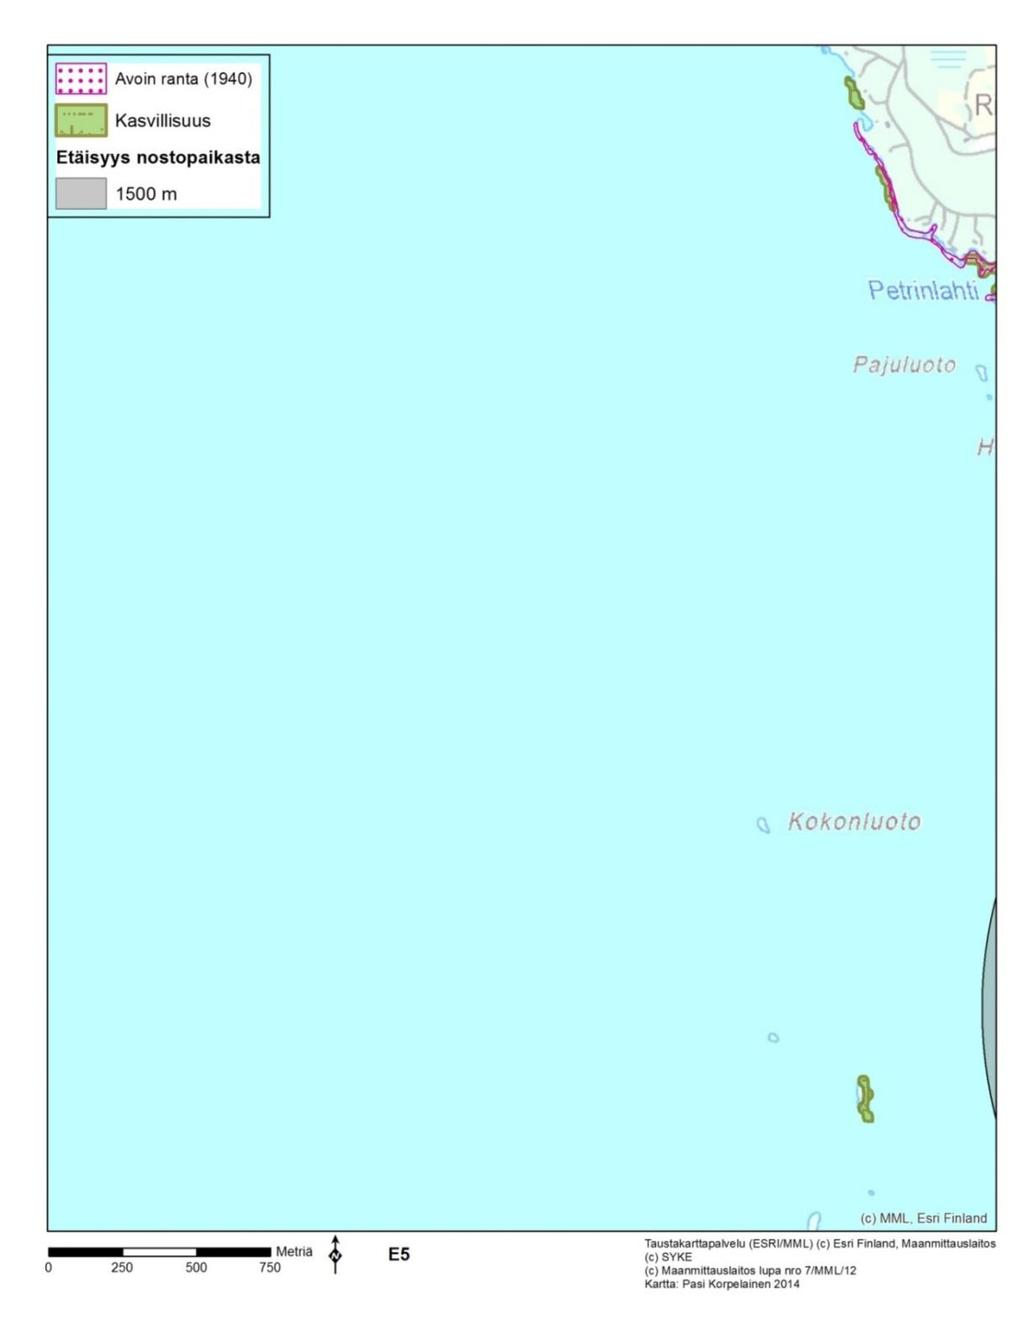 7.5.5 Petrinlahti-Kokonluoto (karttalehti E5) Karttalehti E5 on Oriveden-Pyhäselän saaristot FI0700018 (SCI)-suojelualueen ulkopuolista Pyhäselkää (kuva 84).